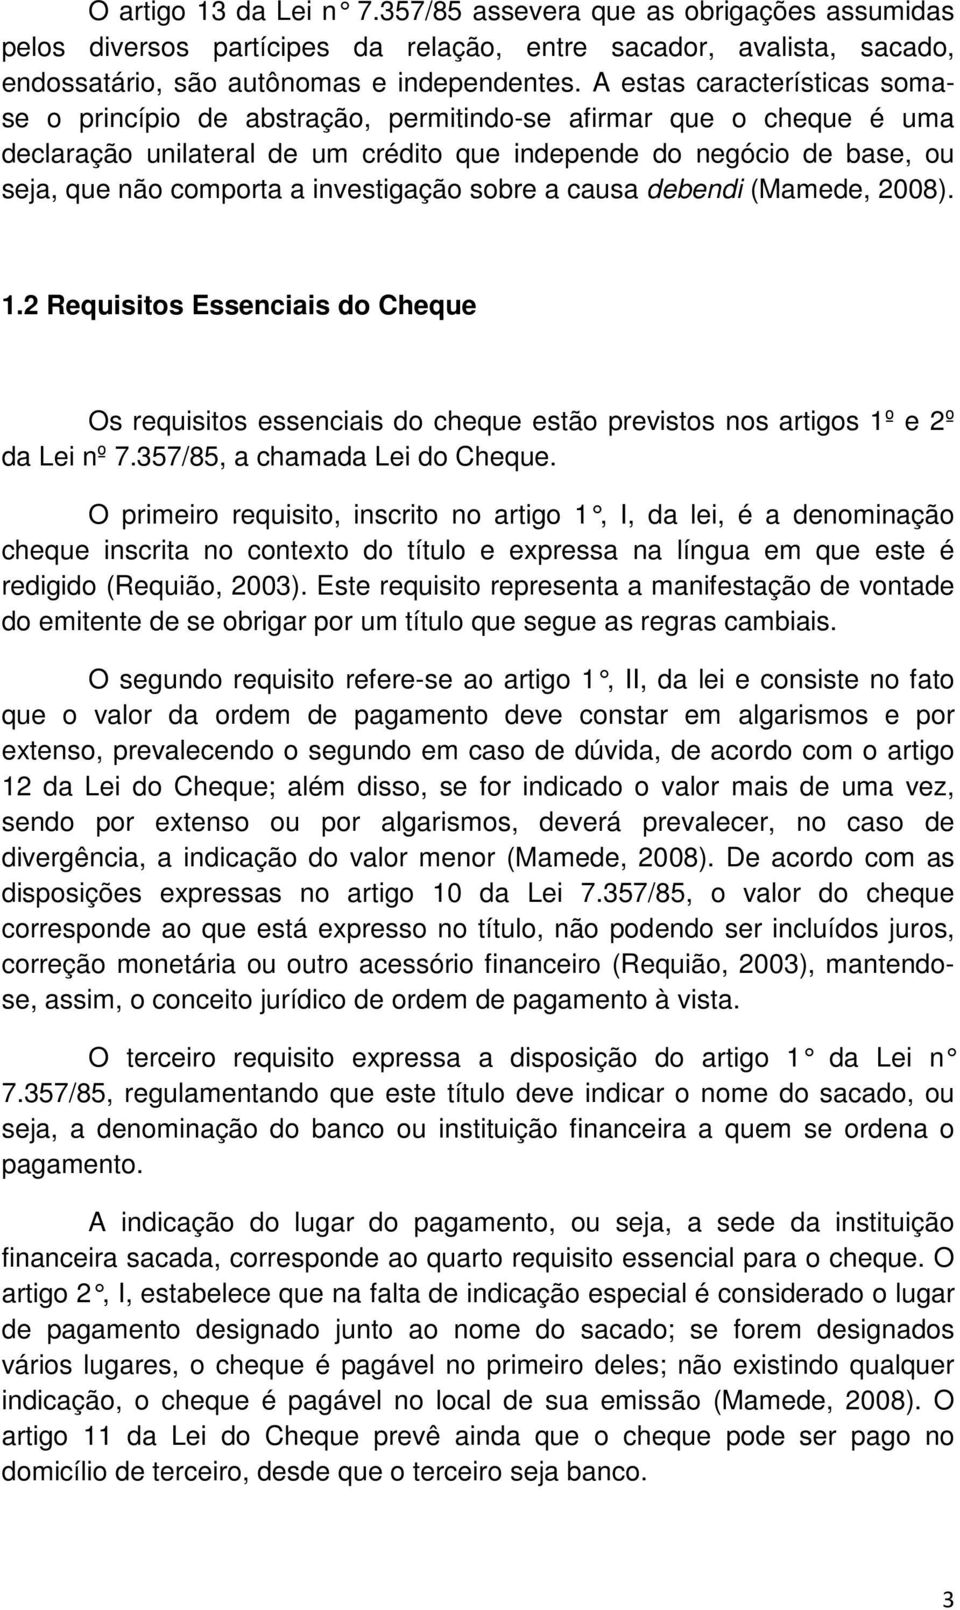 investigação sobre a causa debendi (Mamede, 2008). 1.2 Requisitos Essenciais do Cheque Os requisitos essenciais do cheque estão previstos nos artigos 1º e 2º da Lei nº 7.